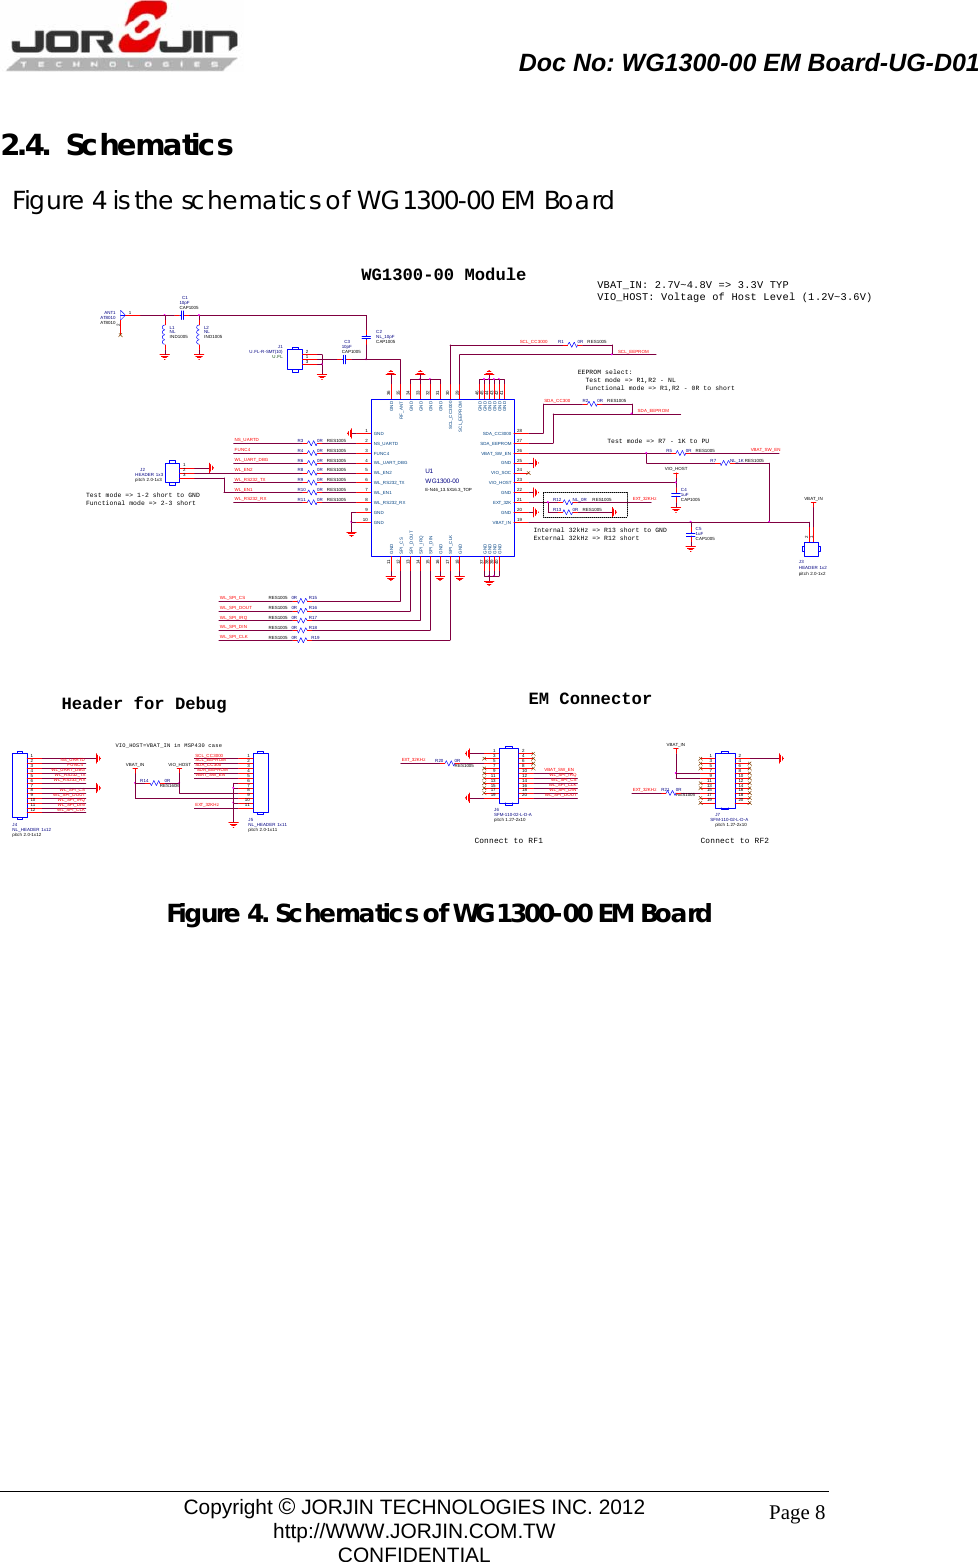                       Doc No: WG1300-00 EM Board-UG-D01                                                                                        Copyright © JORJIN TECHNOLOGIES INC. 2012 http://WWW.JORJIN.COM.TW CONFIDENTIAL Page 82.4.  Schematics Figure 4 is the schematics of WG1300-00 EM Board  R14 0RRES1608SCL_CC3000EEPROM select:  Test mode =&gt; R1,R2 - NL  Functional mode =&gt; R1,R2 - 0R to shortVBAT_IN: 2.7V~4.8V =&gt; 3.3V TYPVIO_HOST: Voltage of Host Level (1.2V~3.6V)SCL_CC3000SCL_EEPROMSDA_CC300SDA_EEPROMVBAT_SW_ENVIO_H OSTC310pFCAP1005J1U.FL-R-SMT(10)U.FL 123L2NLIND1005C110pFCAP1005L1NLIND1005 C2NL_10pFCAP1005ANT1AT8010AT801012VIO_HOST=VBAT_IN in MSP430 caseVBAT_INR21 0RRES1005EXT_32KHzR1 0R RES1005EXT_32KHz R20 0RRES1005C41uFCAP1005EXT_32KHzVBAT_SW_ENVBAT_INJ3HEADER 1x2pitch 2.0-1x212WL_RS232_TXWL_RS232_RXWL_SPI_CSWL_SPI_DOUTWL_SPI_IRQWL_SPI_DINWL_SPI_C LKVBAT_INWG1300-00 ModuleWL_SPI_CLKWL_SPI_DINWL_SPI_IRQWL_SPI_DOUTWL_SPI_CSR190RRES1005R170RRES1005R150RRES1005R160RRES1005R180RRES1005WL_SPI_CLKWL_SPI_DINWL_SPI_IRQWL_SPI_DOUTWL_SPI_CSNS_UARTDFUNC4WL_UART_DBGJ4NL_HEADER 1x12pitch 2.0-1x12123456789101112SCL_EEPROMTest mode =&gt; 1-2 short to GNDFunctional mode =&gt; 2-3 shortR3 0R RES1005R6 0R RES1005R9 0R RES1005R8 0R RES1005R4 0R RES1005R11 0R RES1005R10 0R RES1005NS_UARTDFUNC4WL_UART_DBGWL_EN2WL_RS232_TXWL_RS232_RXWL_EN1J2HEADER 1x 3pitch 2.0-1x3123EM ConnectorR12 NL_0R RES1005 EXT_32KHzU1WG1300-00E-N46_13.5X16.3_TOPWL_UART_DBG4NS_UARTD2WL_EN17WL_EN25FUNC43WL_RS232_TX6WL_RS232_RX8EXT_32K 21GND 25GND9SCL_CC3000 30SCL_EEPROM 29SDA_C C3000 28SDA_EEPROM 27GND 22SPI_IRQ14SPI_DOUT13SPI_CS12SPI_CLK17SPI_DIN15VBAT_SW_EN 26VBAT_IN 19RF_ANT 35GND 31GND 33GND16GND 34VIO_H OST 23GND 32GND37GND38GND39GND40GND 41GND 42GND 43GND 44GND 46GND 45GND1GND18GND10GND 20VIO_SOC 24GND11 GND 36R5 0R RES1005 VBAT_SW_ENR13 0R RES1005R7 N L_1K RES1005Internal 32kHz =&gt; R13 short to GNDExternal 32kHz =&gt; R12 shortVIO_H OSTJ6SFM-110-02-L-D-Apitch 1.27-2x101357911131517192468101214161820R2 0R RES1005SDA_CC300SDA_EEPROMC51uFCAP1005J7SFM-110-02-L-D-Apitc h 1. 27-2x 101357911131517192468101214161820Connect to RF1Header for DebugJ5NL_HEADER 1x11pitc h 2. 0-1x111234567891011Connect to RF2Test mode =&gt; R7 - 1K to PU  Figure 4. Schematics of WG1300-00 EM Board                